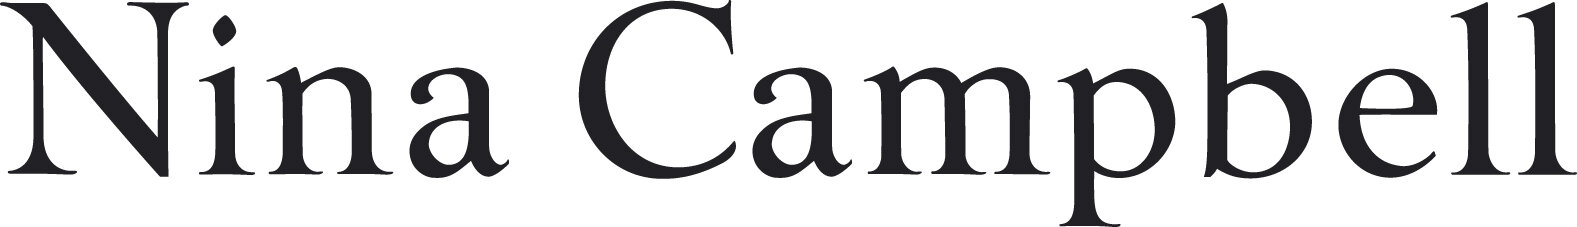 Nina Campbell ( & L) logo.jpg